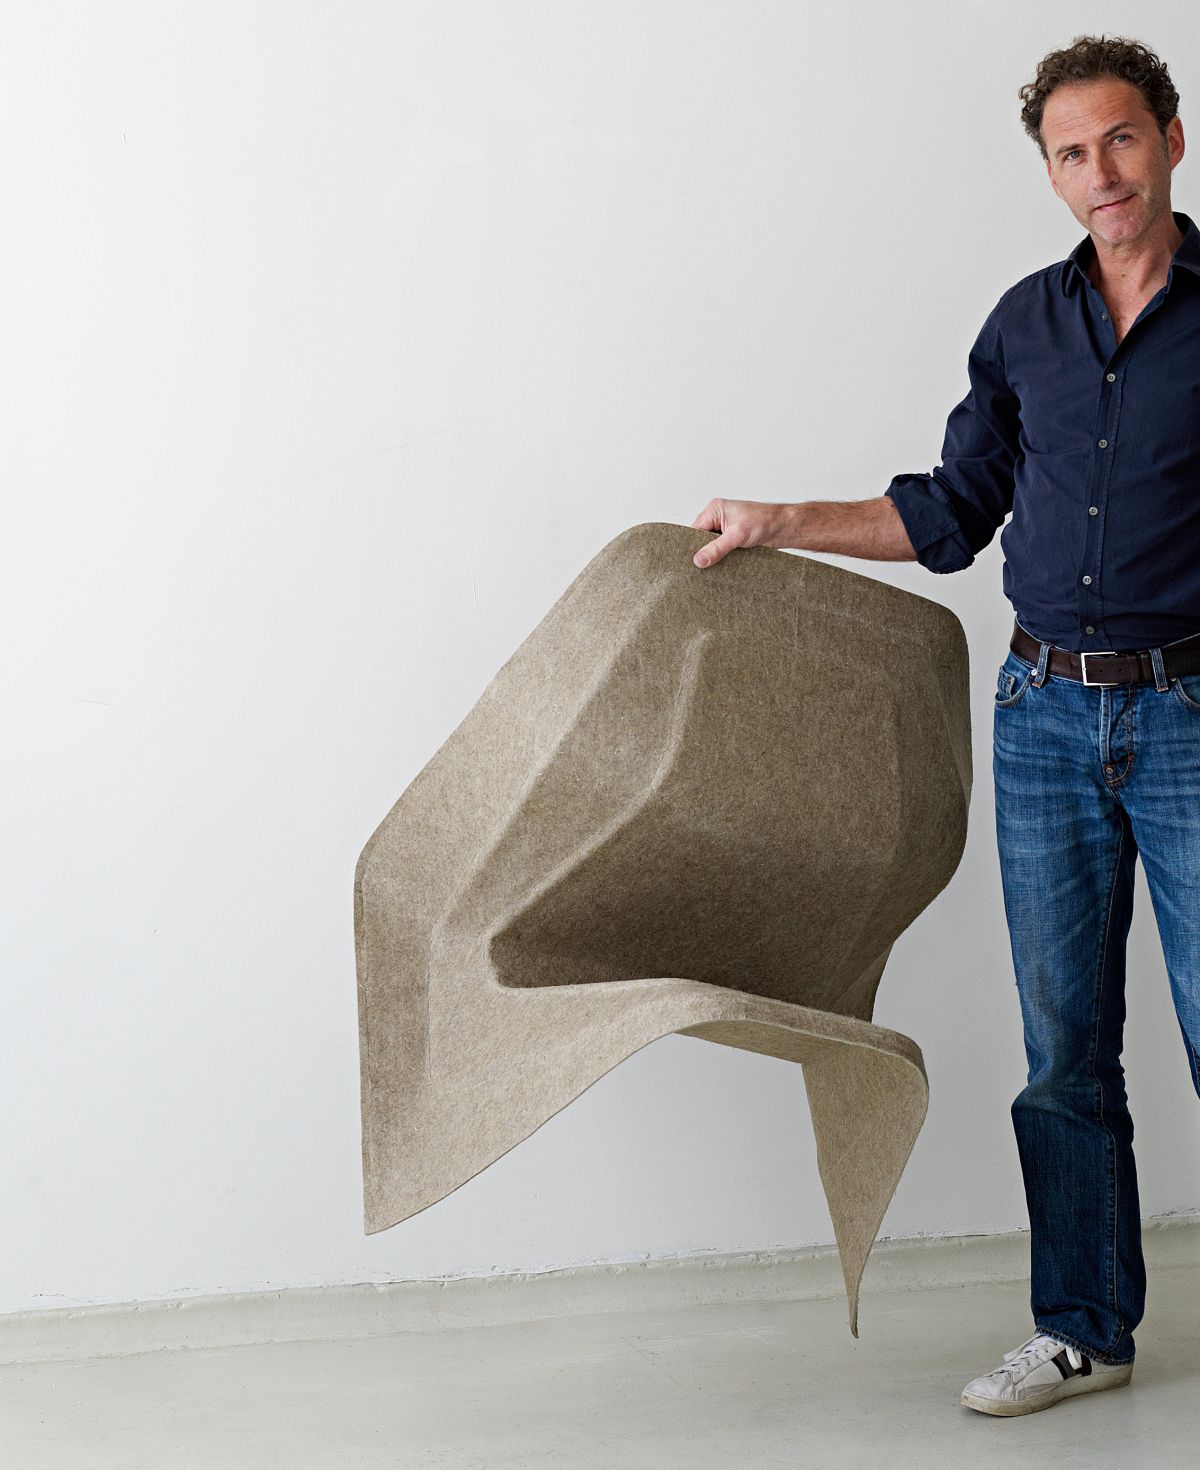 Hemp Chair de Werner Aisslinger